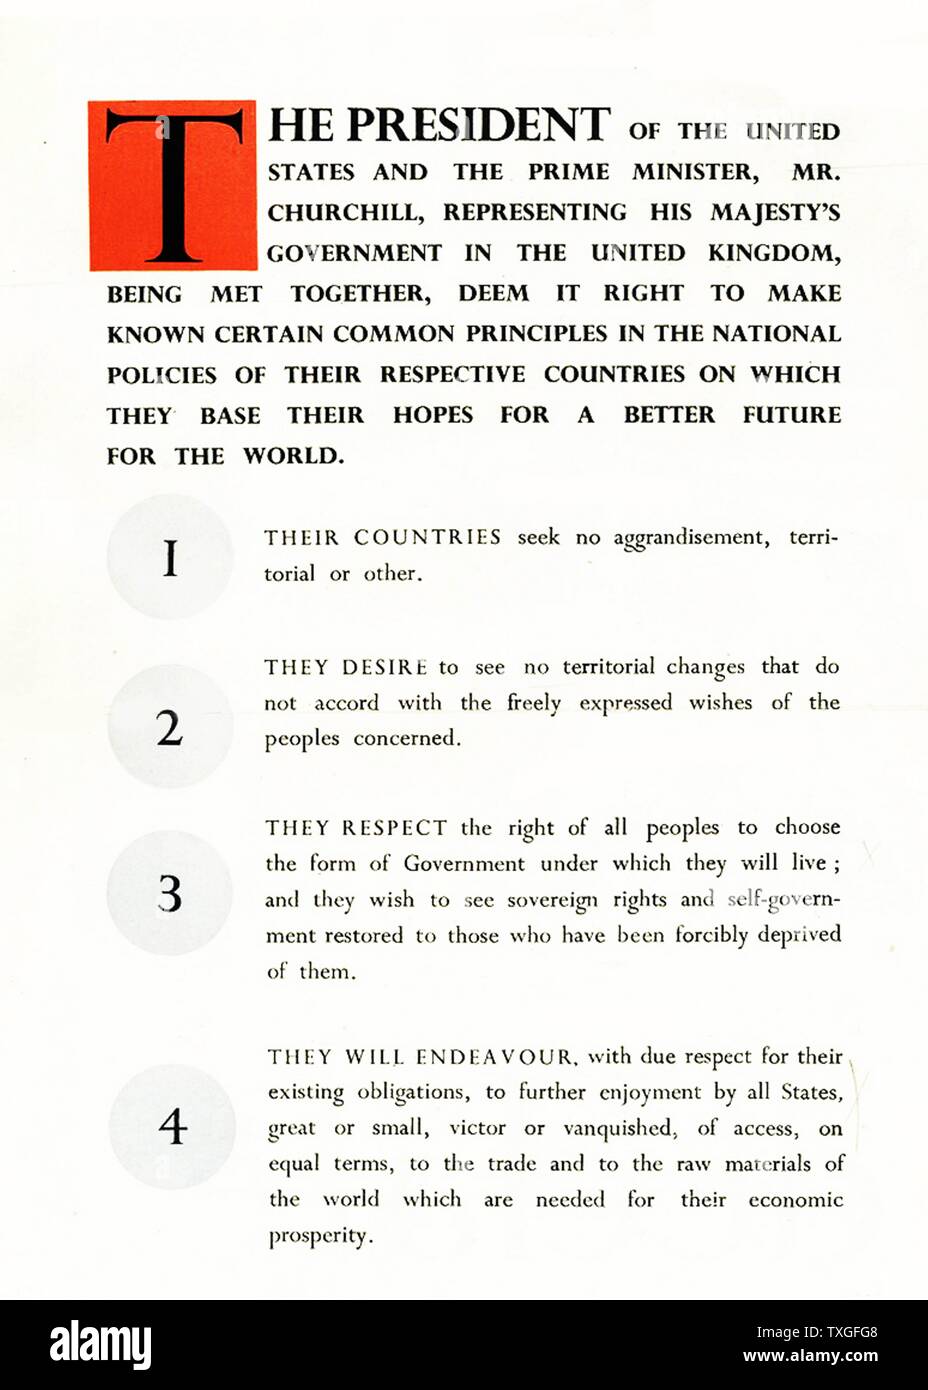 Première page de la Charte de l'Atlantique ; un rôle de politique publié le 14 août 1941 que, au début de la Seconde Guerre mondiale, défini les objectifs des Alliés pour le monde de l'après-guerre. Il a été rédigé par les dirigeants de la France et le Royaume-Uni, et plus tard convenu par tous les alliés de la Seconde Guerre mondiale. Banque D'Images